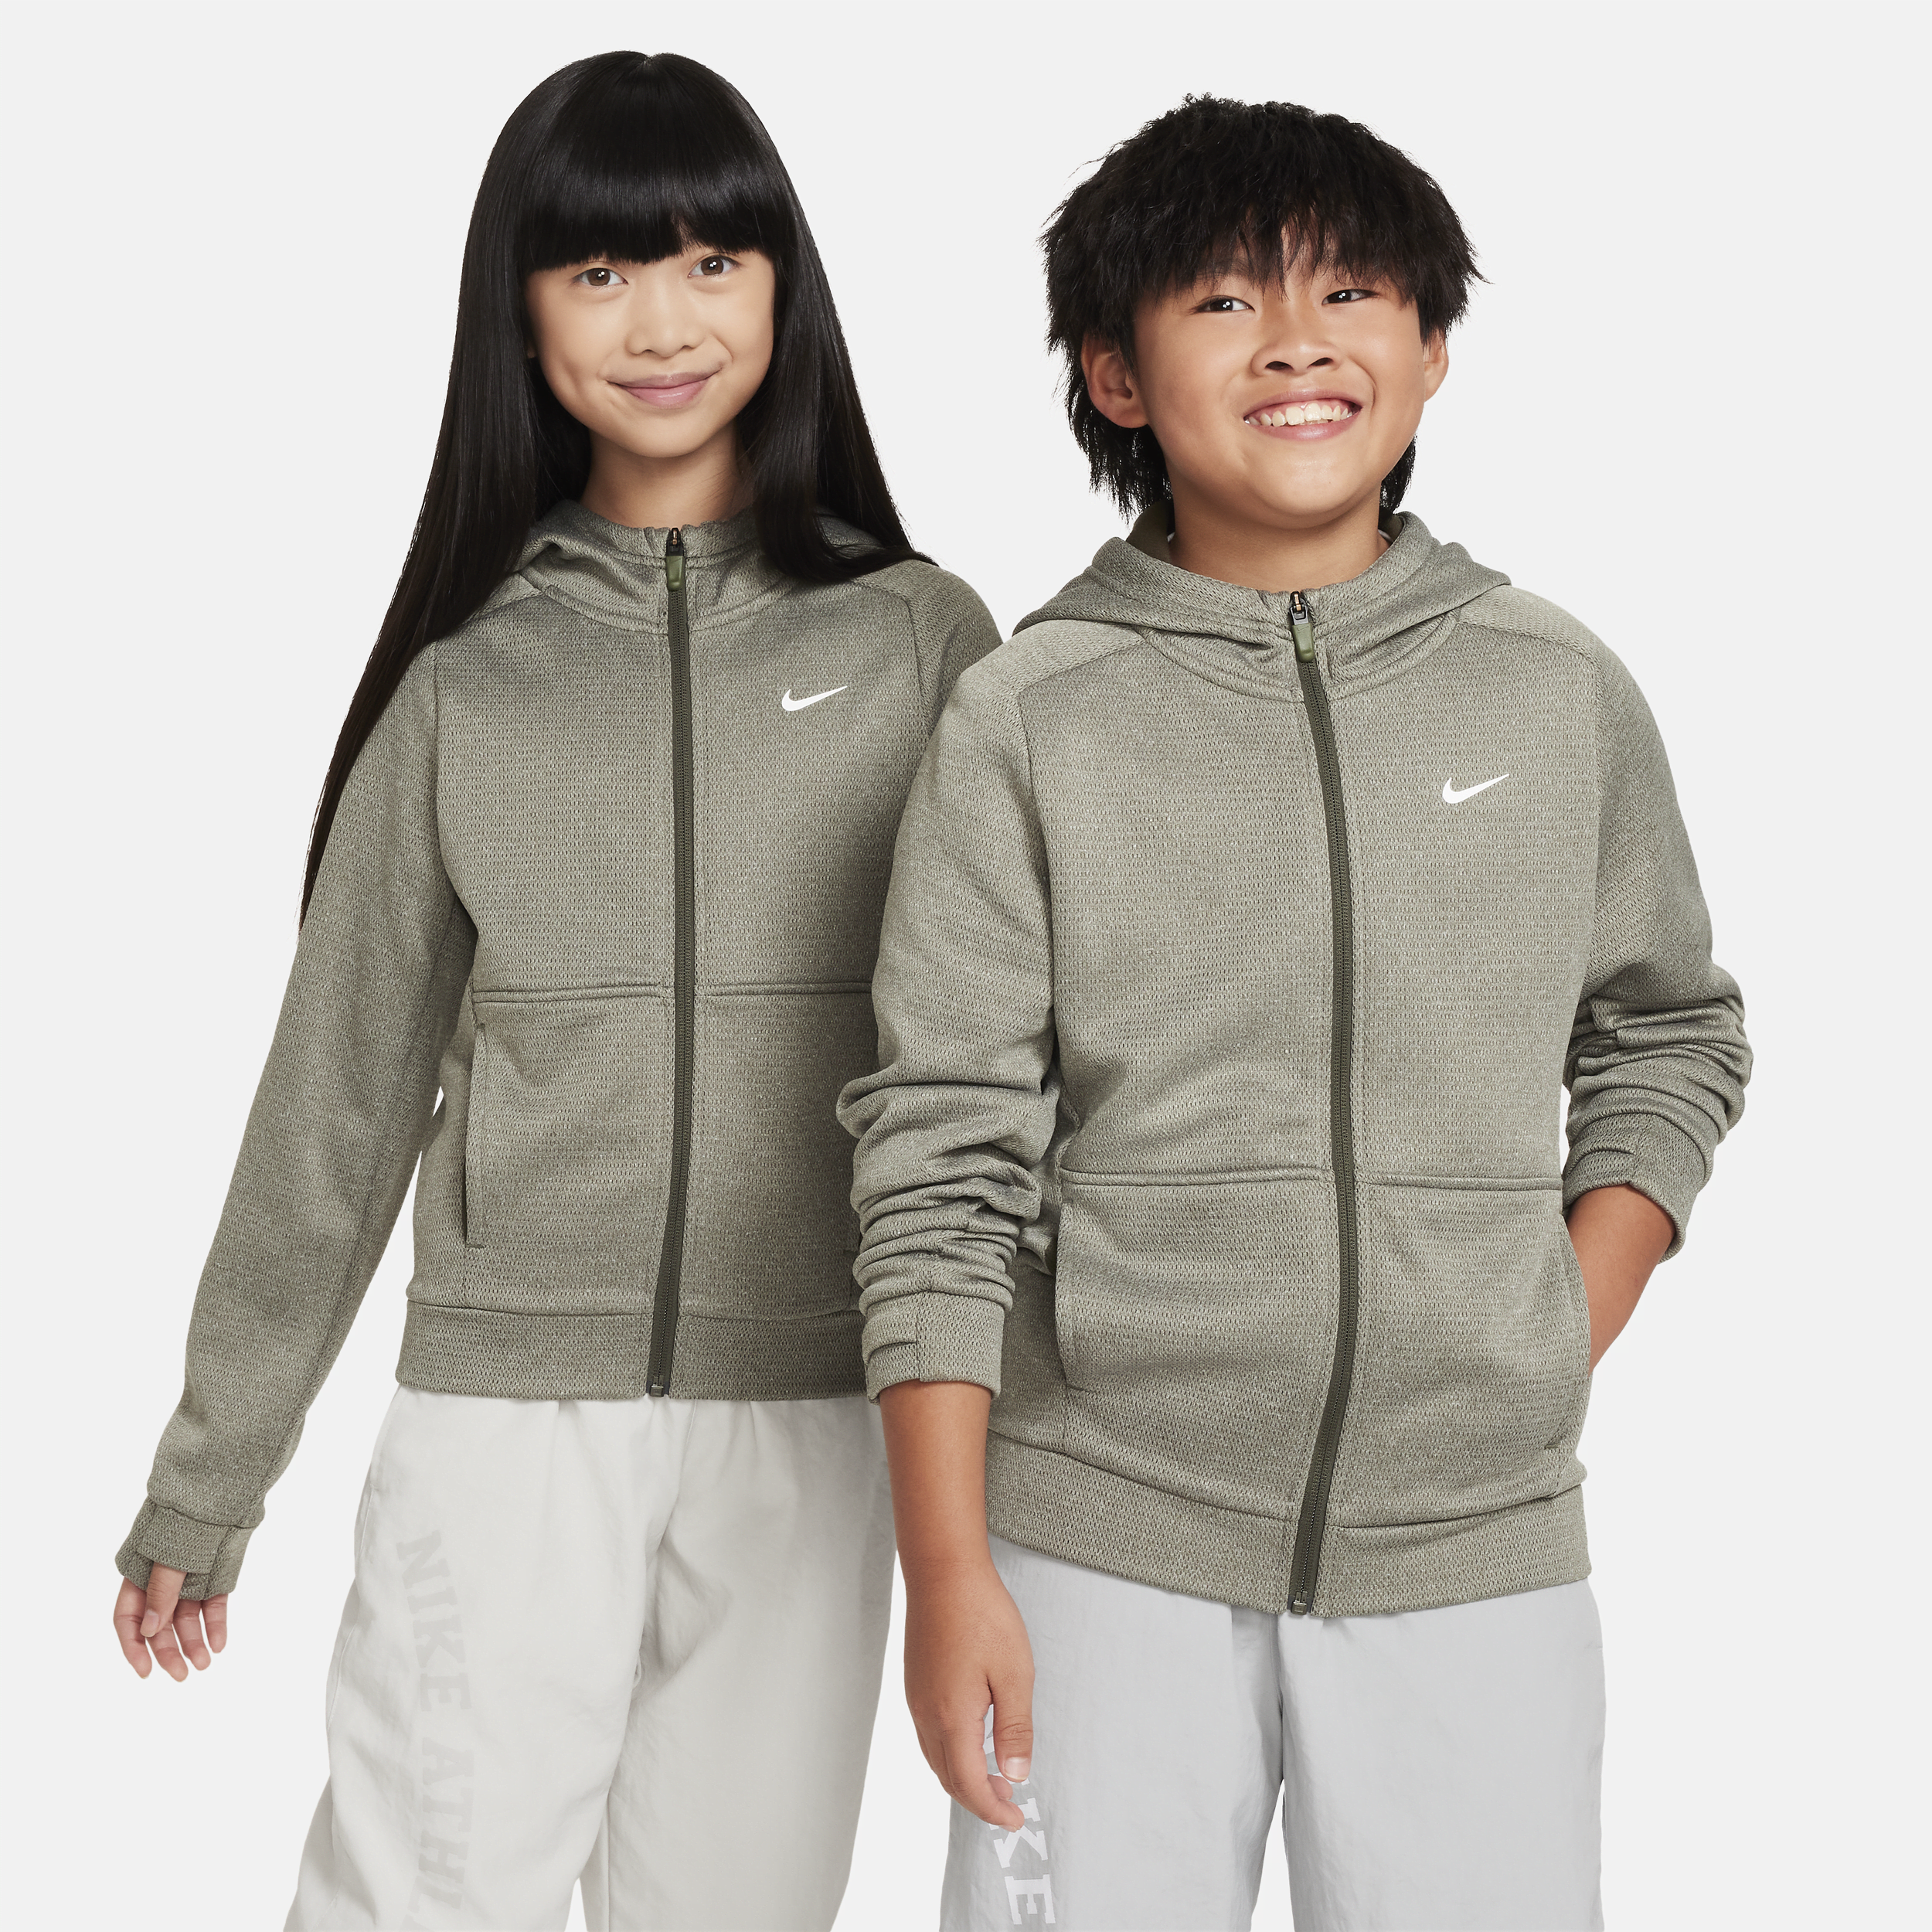 Nike Therma-FIT Sudadera con capucha y cremallera completa - Niño/a - Verde